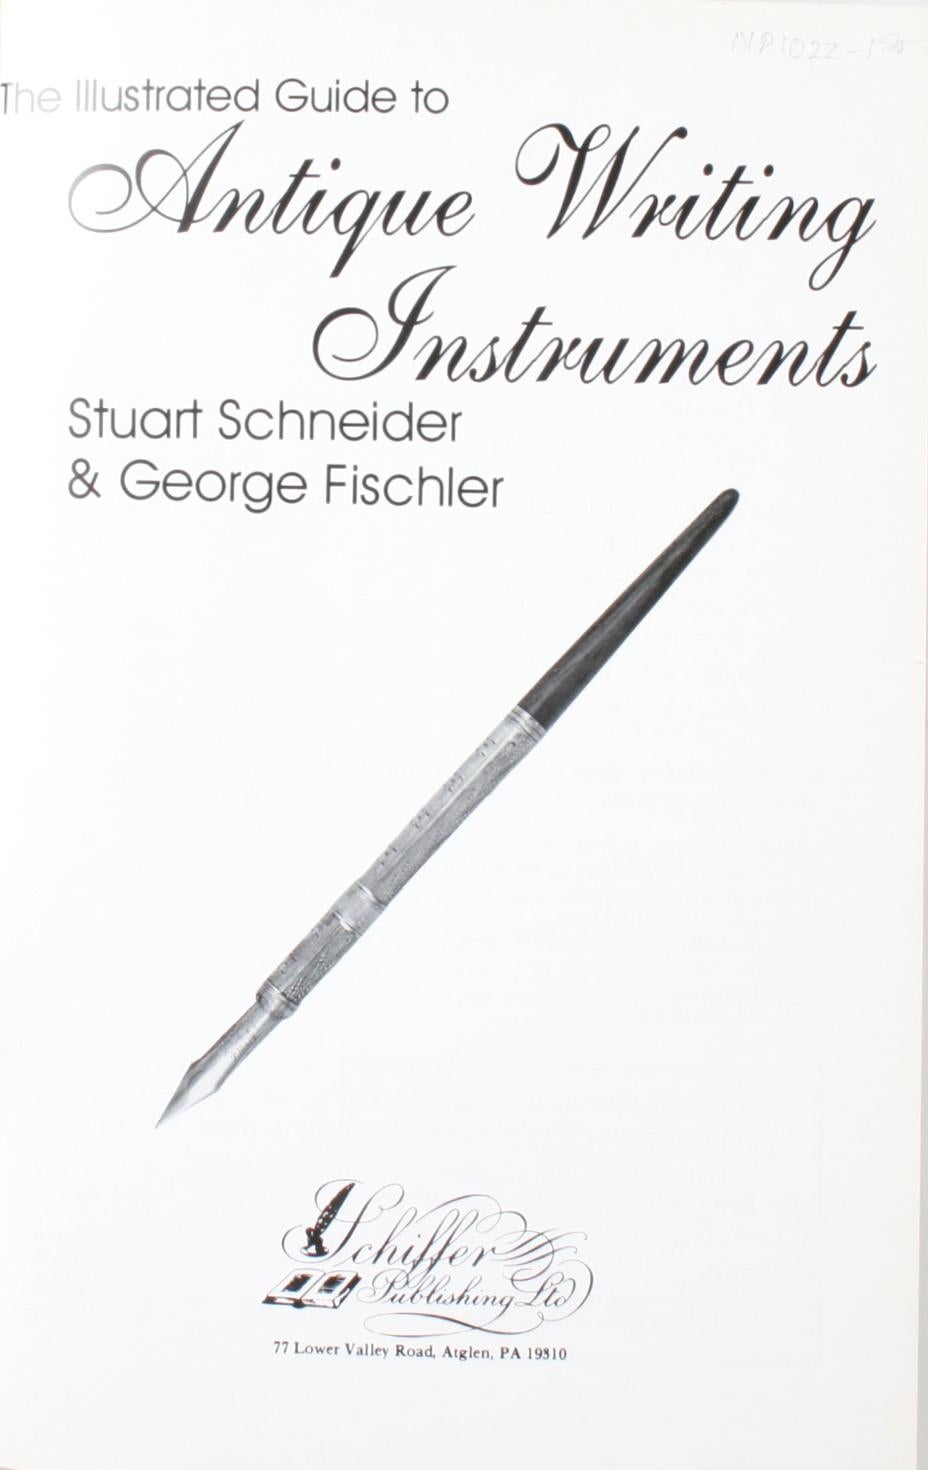 The Illustrated Guide to Antique Writing Instruments par Stuart & George Fischler. 1ère édition à couverture souple. 160 pages. Ce livre est devenu le guide de poche standard. C'est exactement ce dont les collectionneurs ont besoin pour une